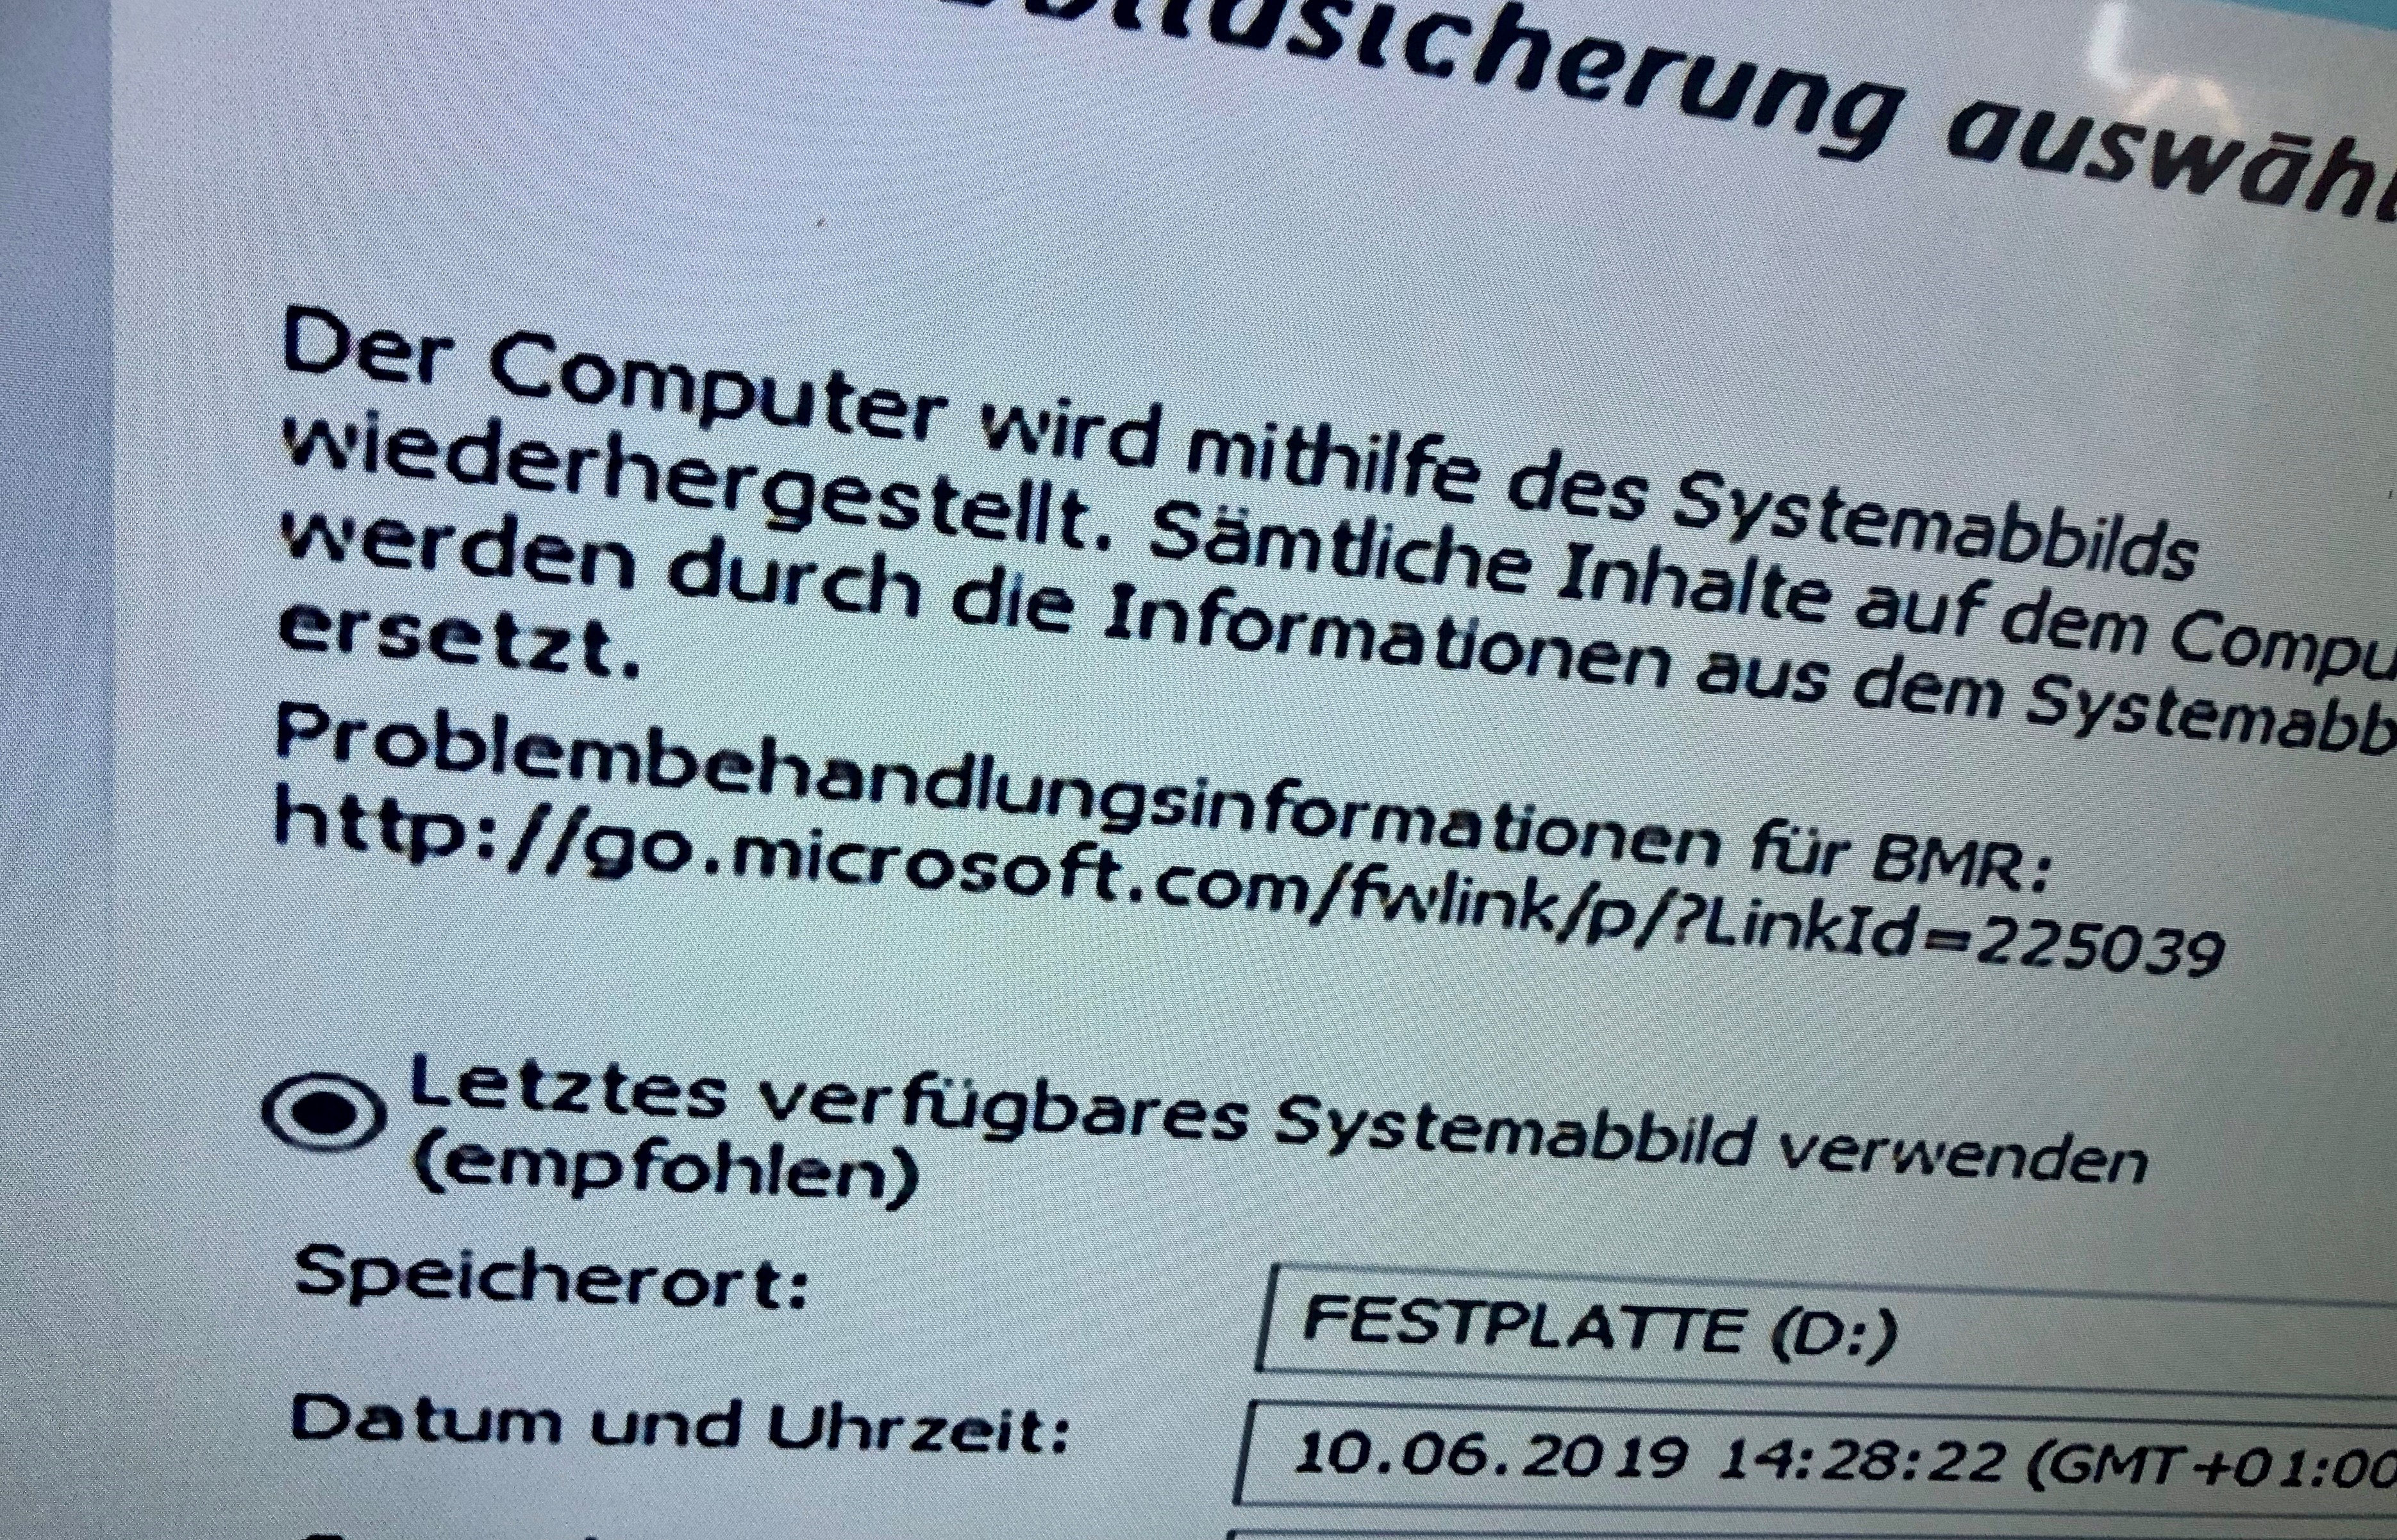 Problem bei der Verwendung eines Systemabbildes (Windows 10)